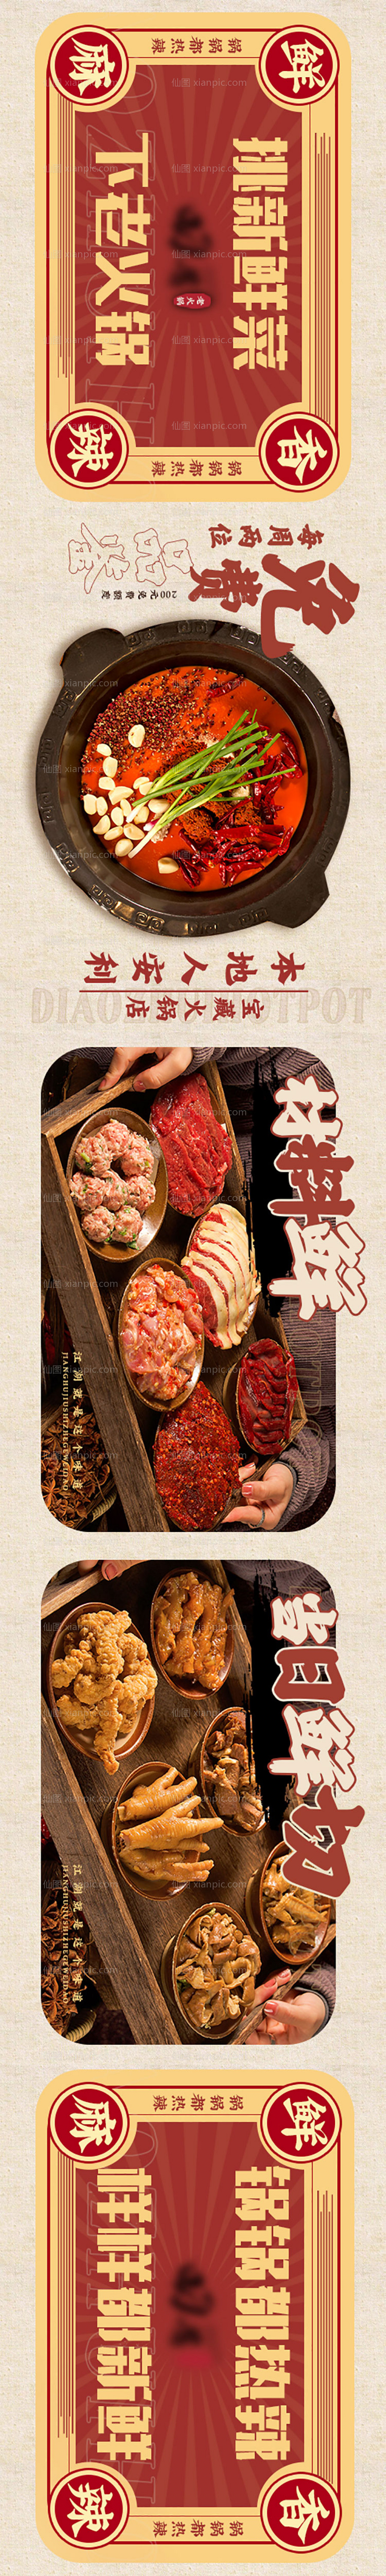 素材乐-餐饮火锅宣传展板